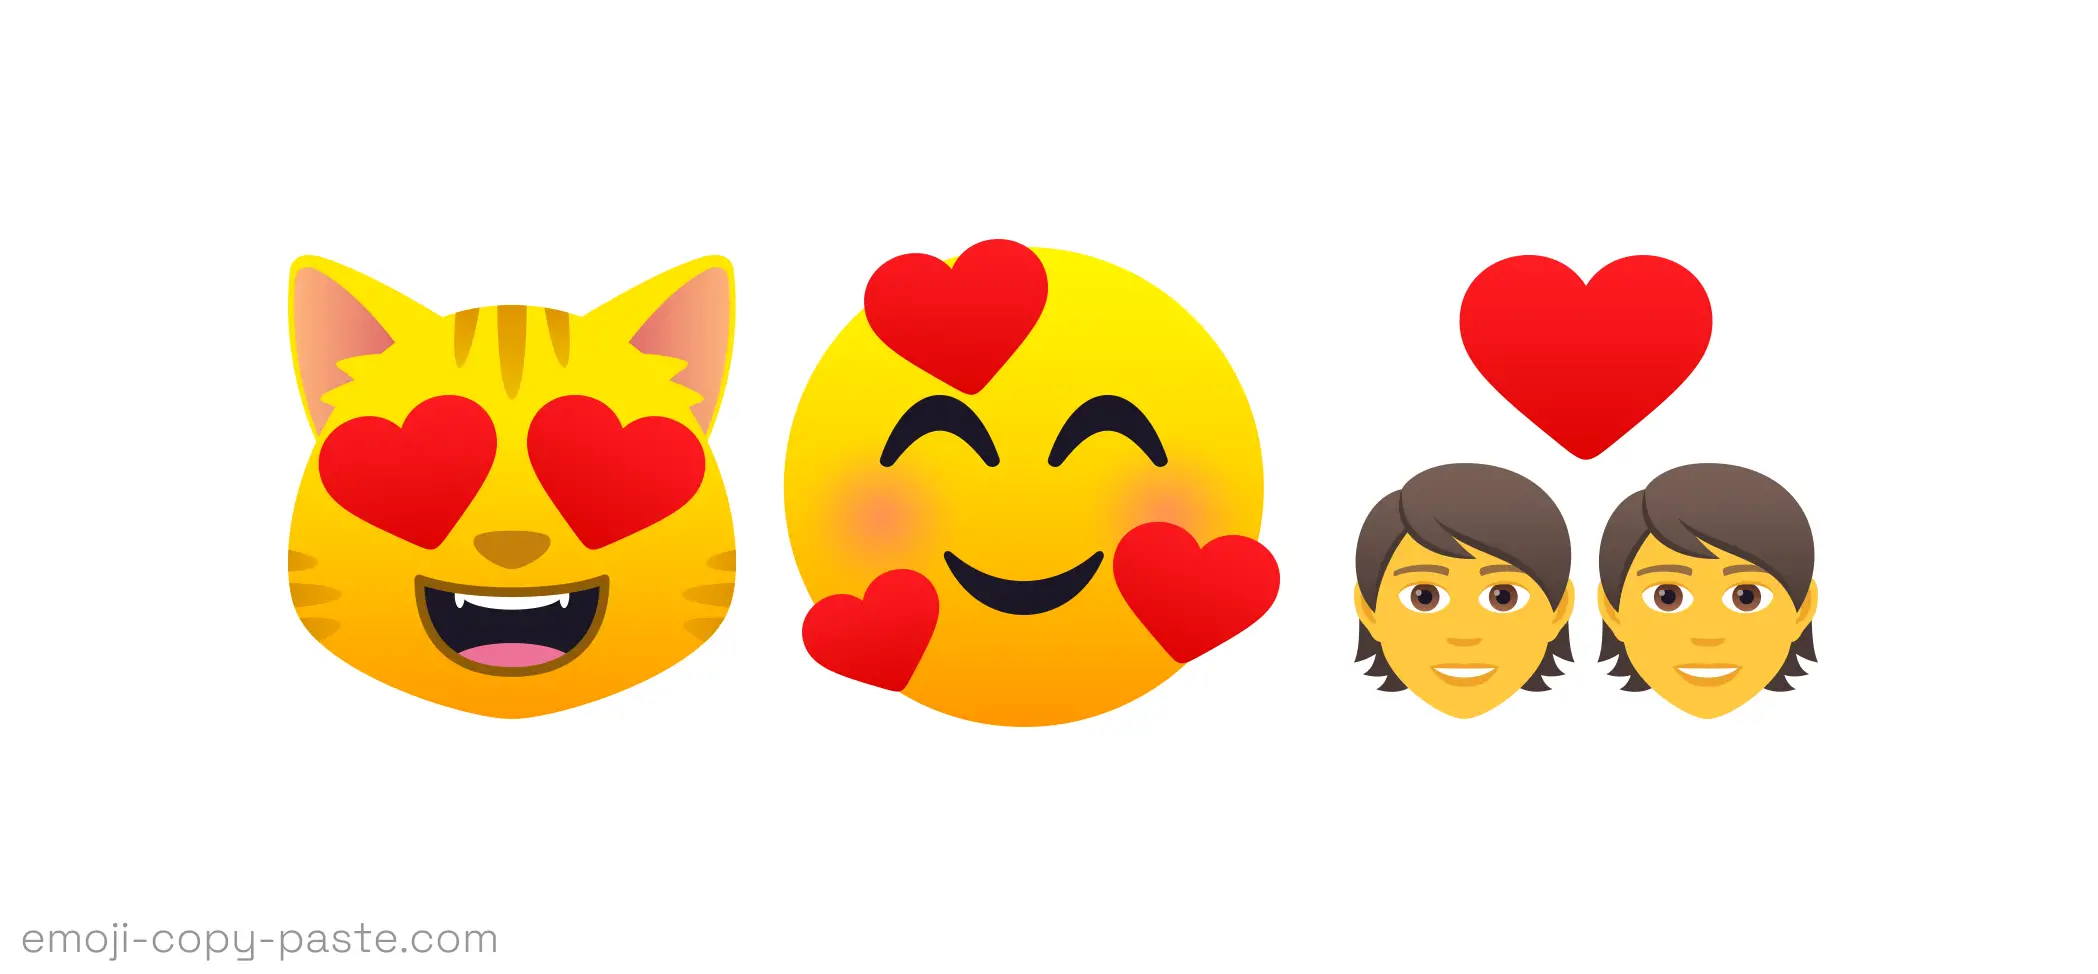 😍👌 Copy and 📋 Paste Emojis + Emoji Meanings 😋